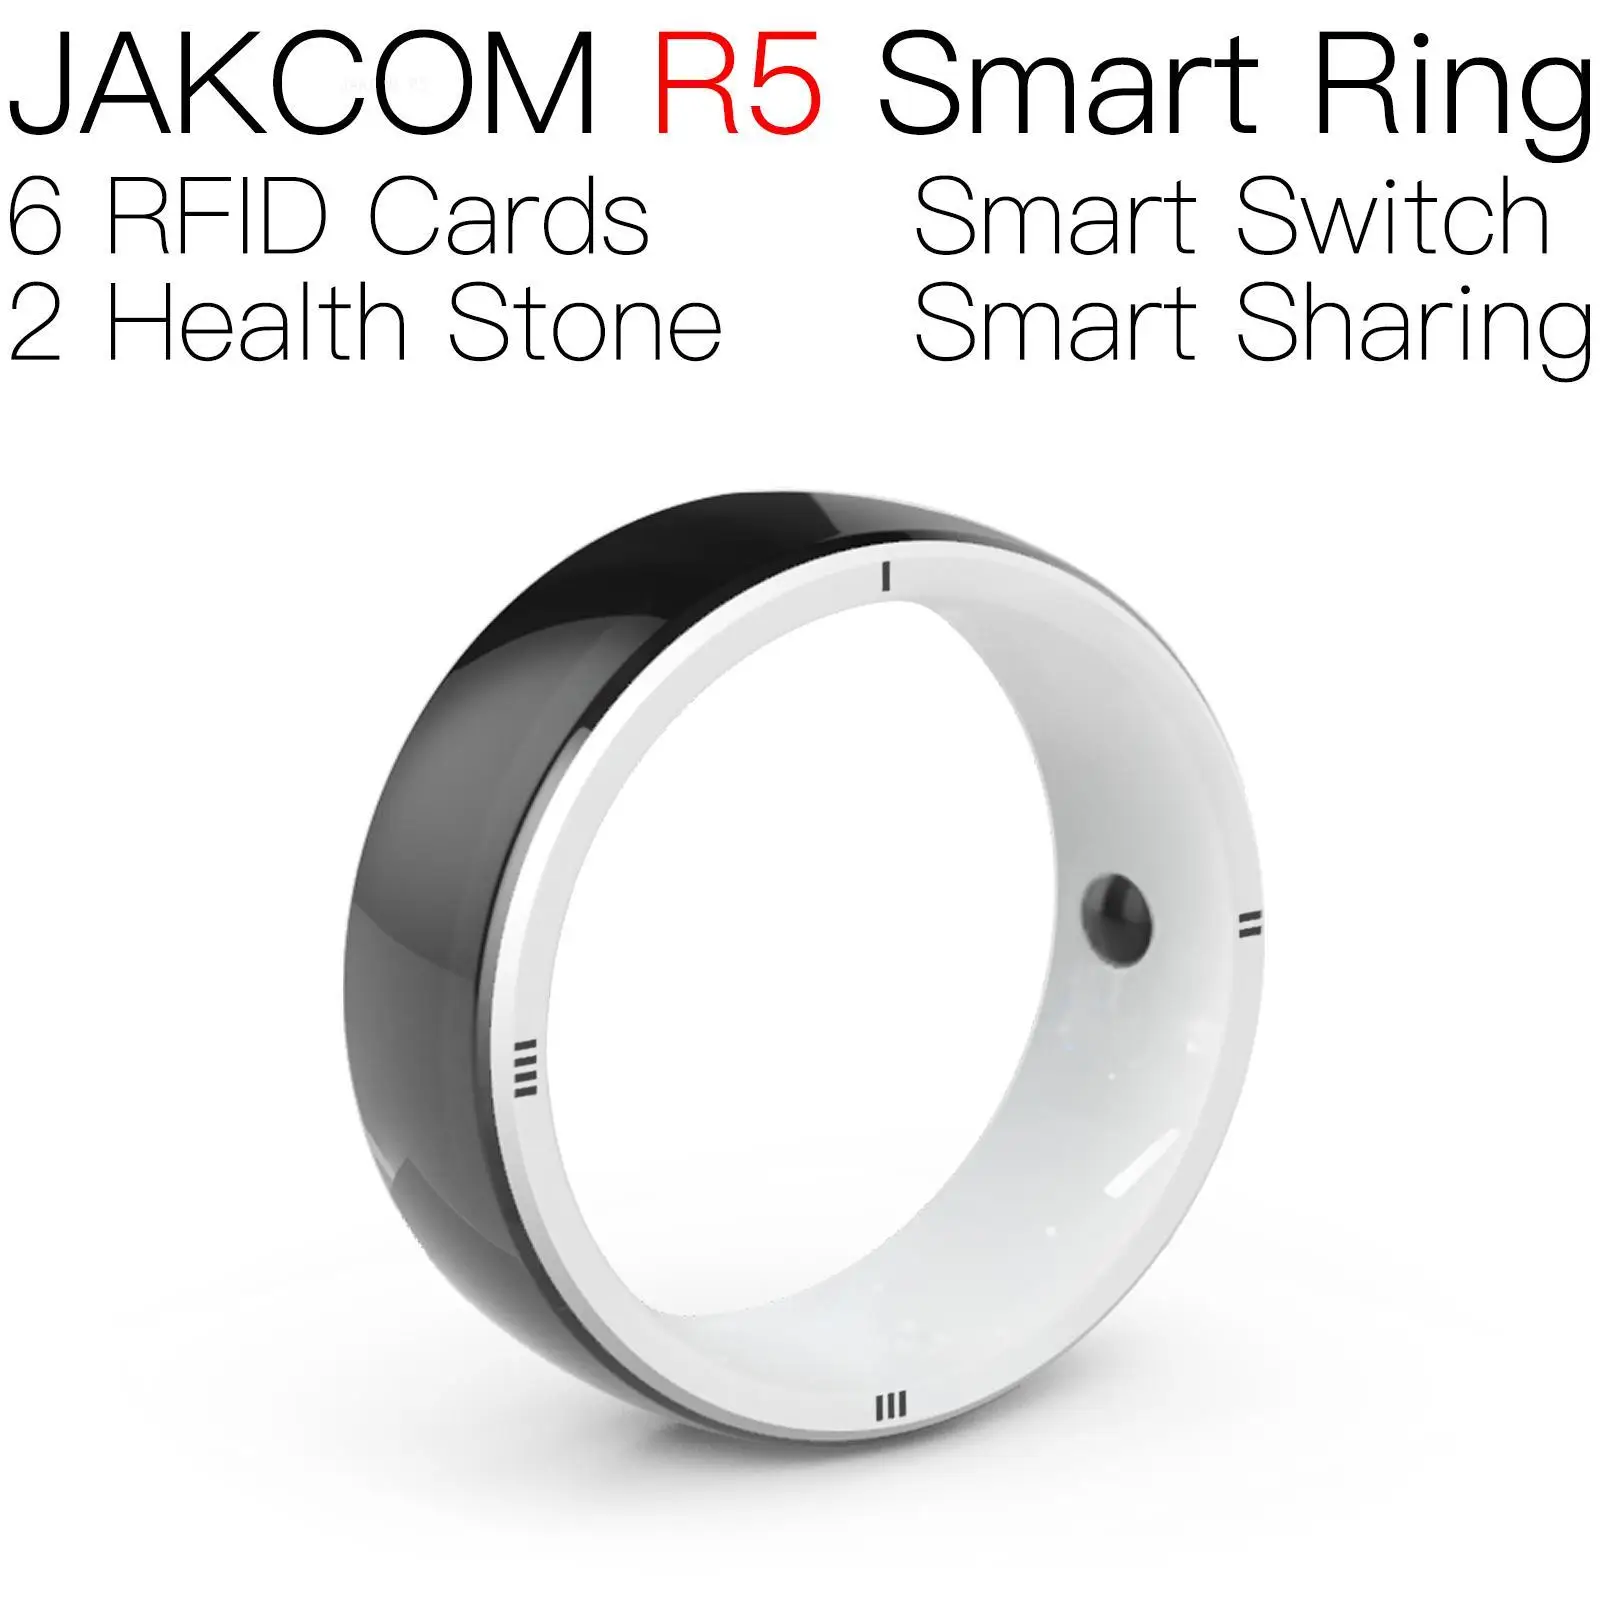 

Умное кольцо JAKCOM R5, лучший подарок с rfid pk10 nfc wear os, металлические карты uhf tag epc 6c, наклейка с чипом asic t17e, новинка